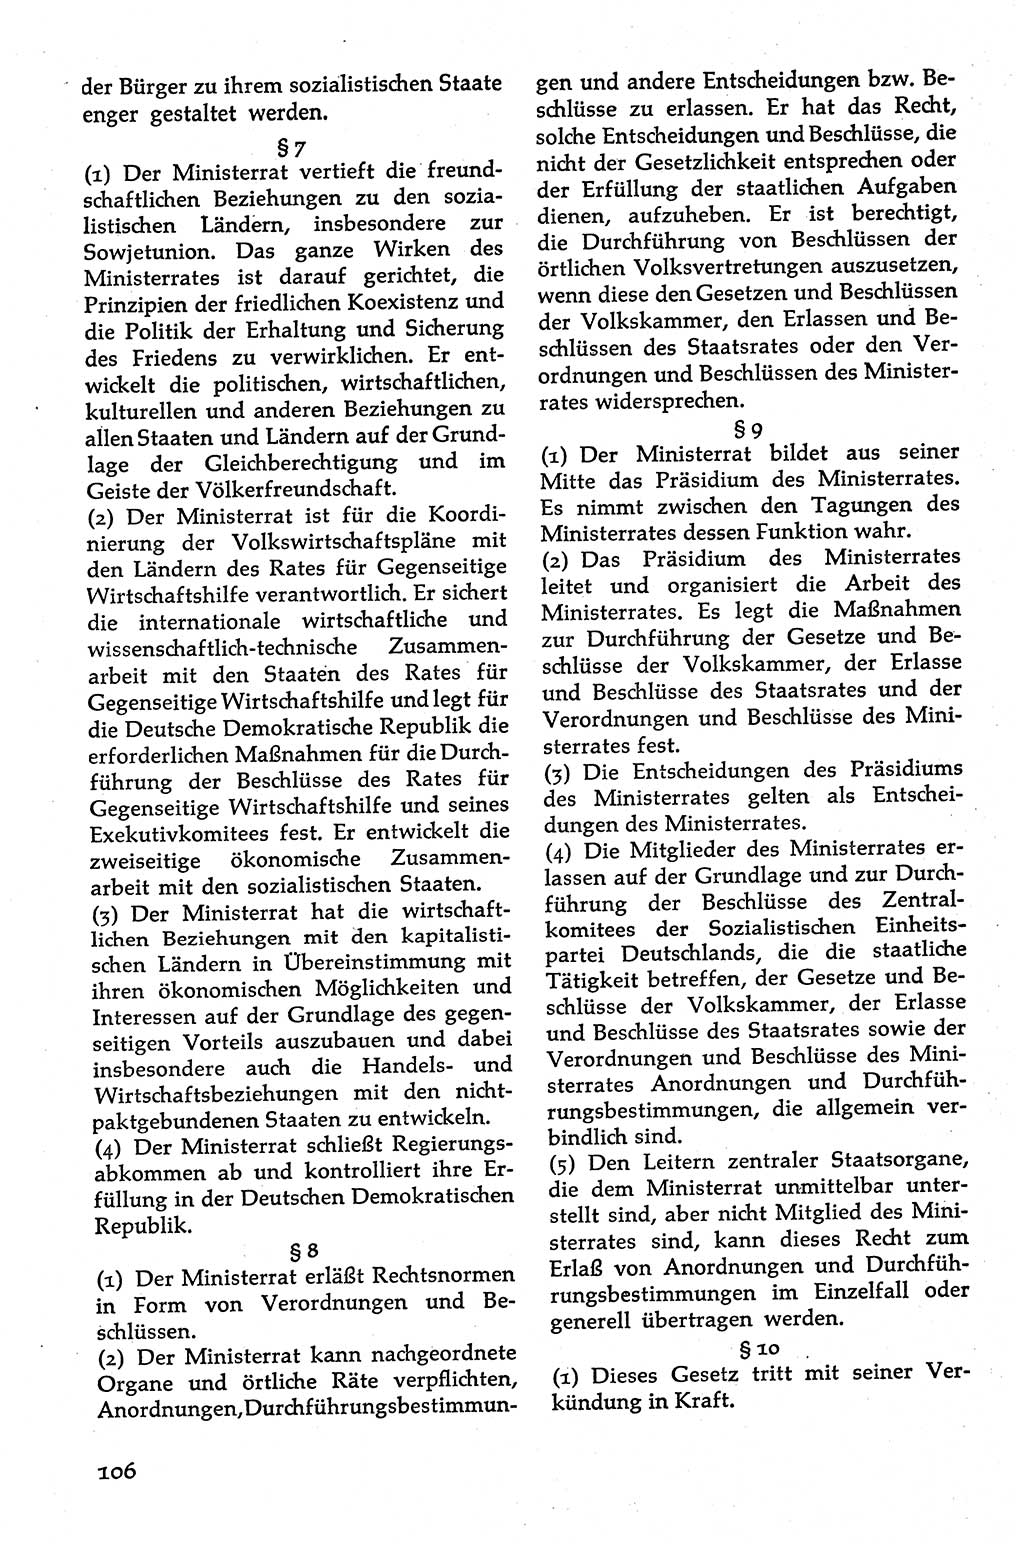 Volksdemokratische Ordnung in Mitteldeutschland [Deutsche Demokratische Republik (DDR)], Texte zur verfassungsrechtlichen Situation 1963, Seite 106 (Volksdem. Ordn. Md. DDR 1963, S. 106)